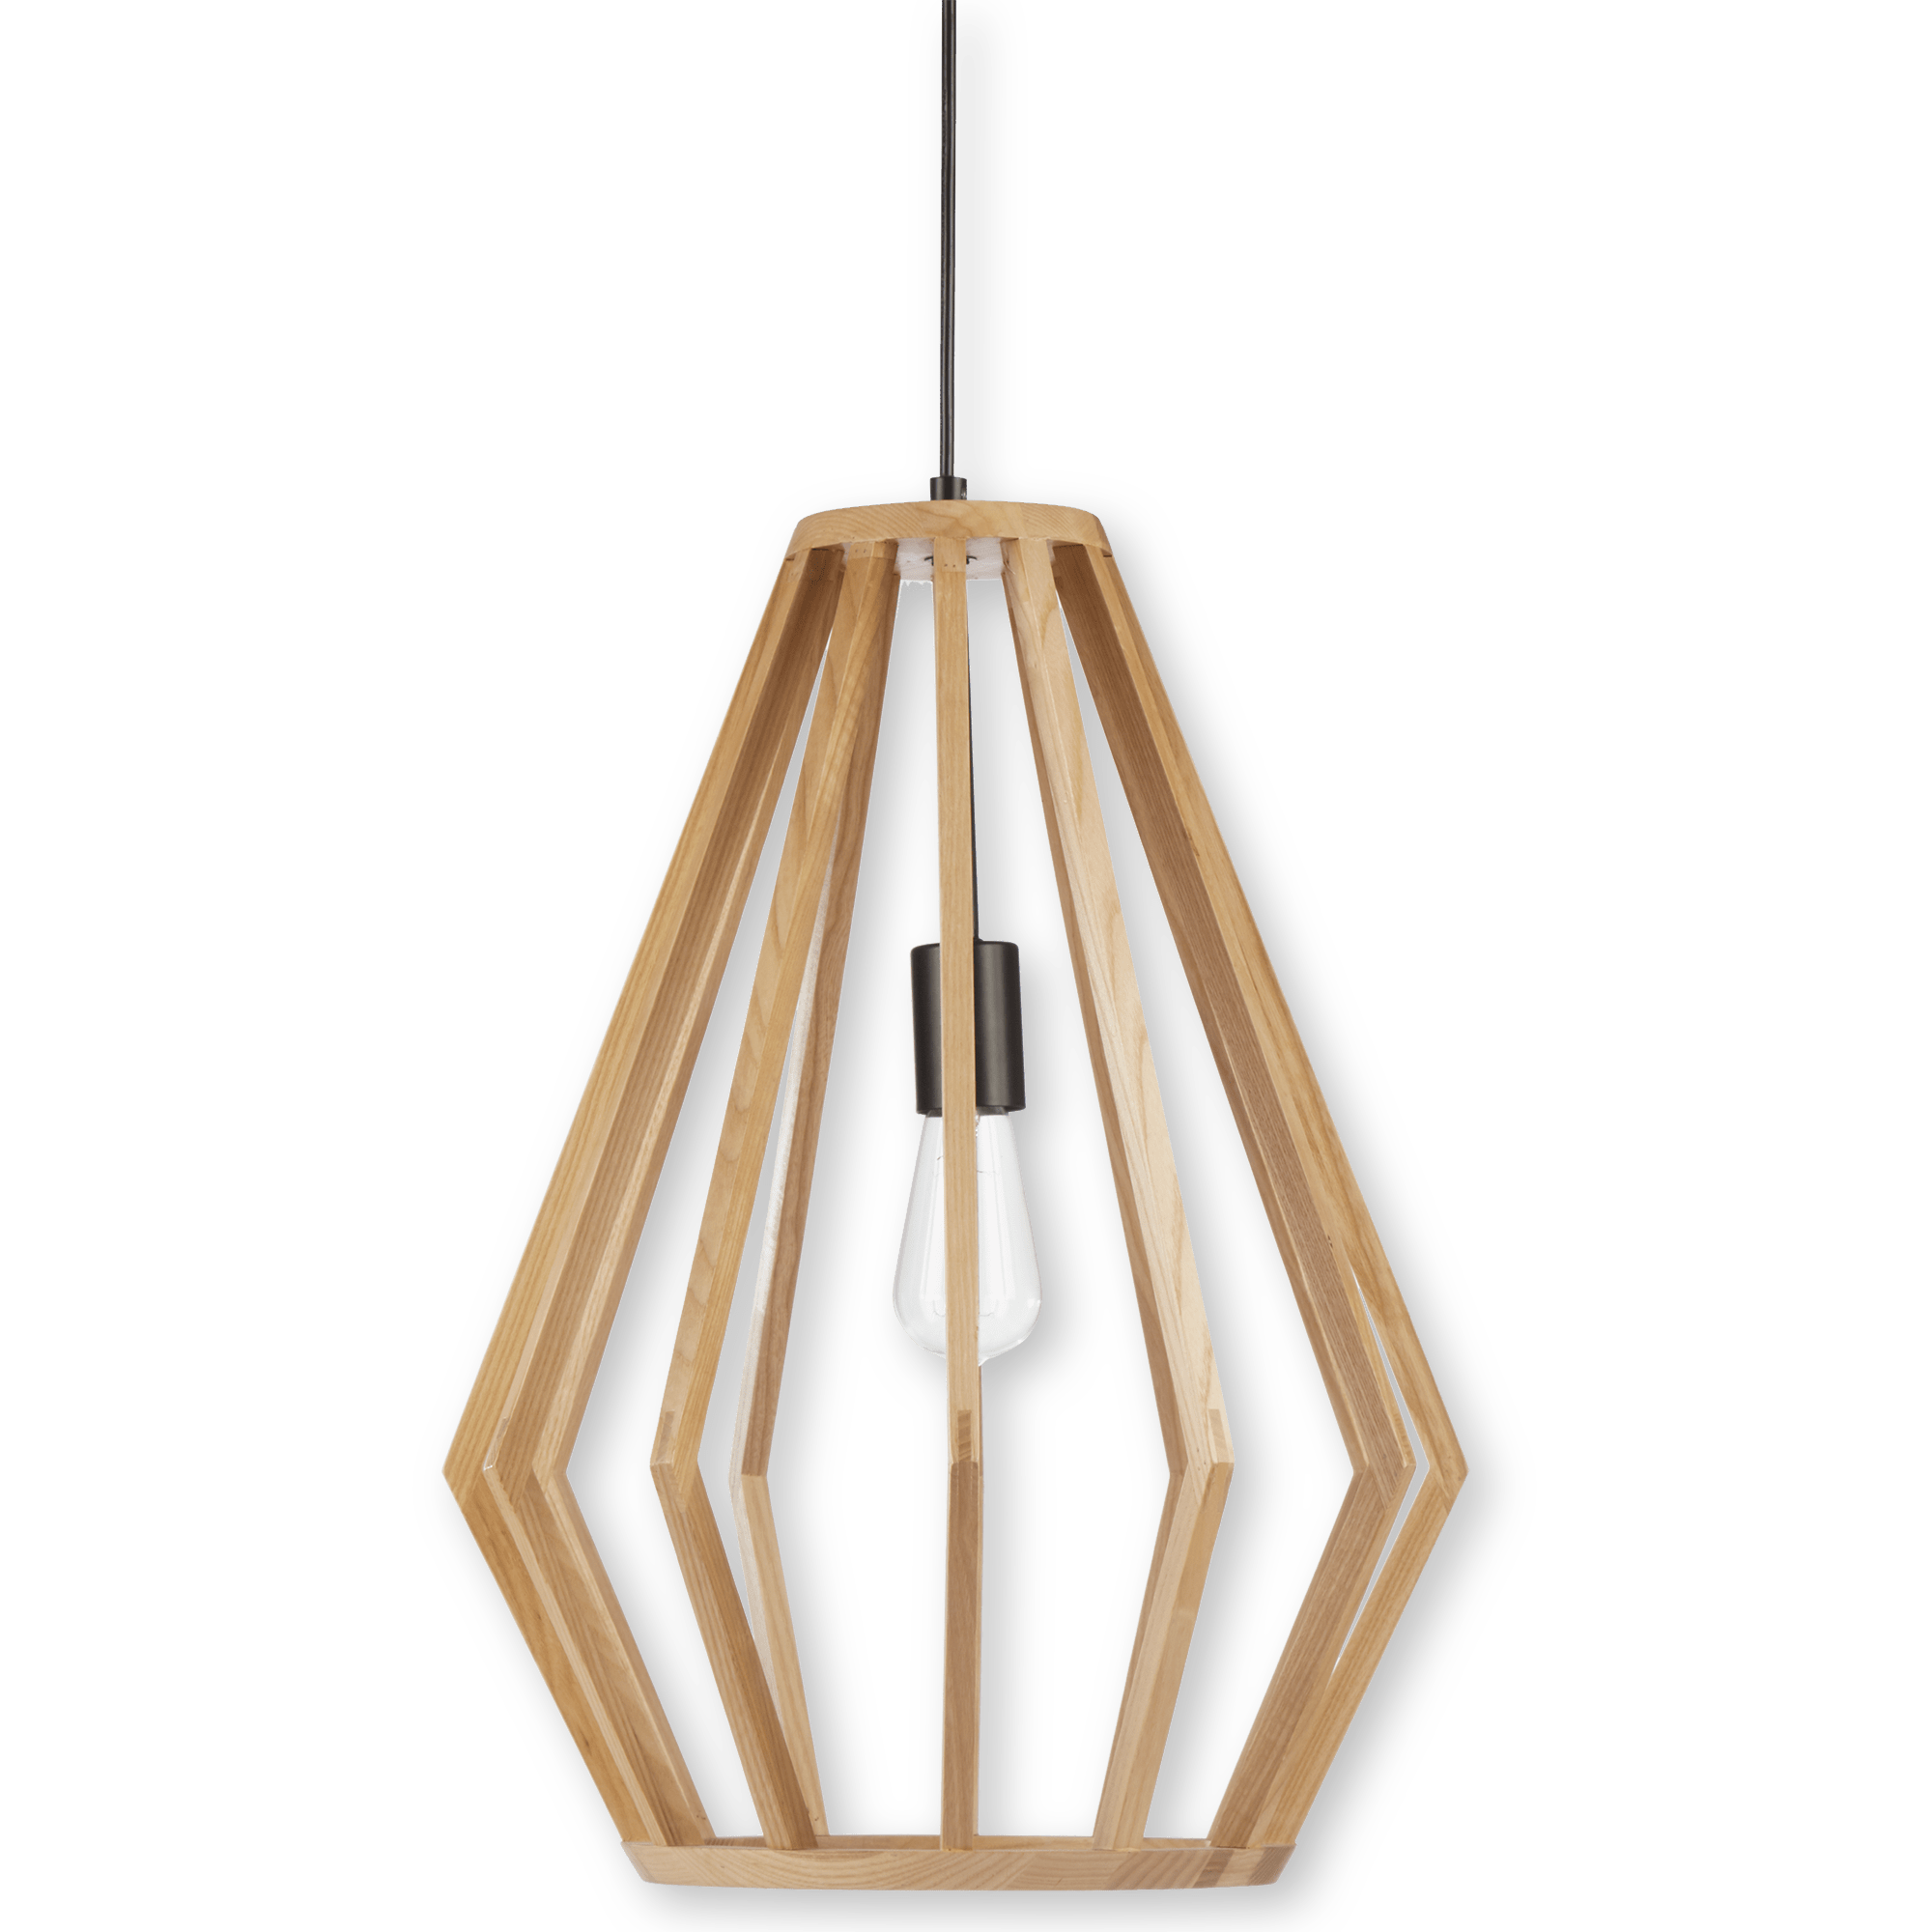 Hanging lamp in openwork wood